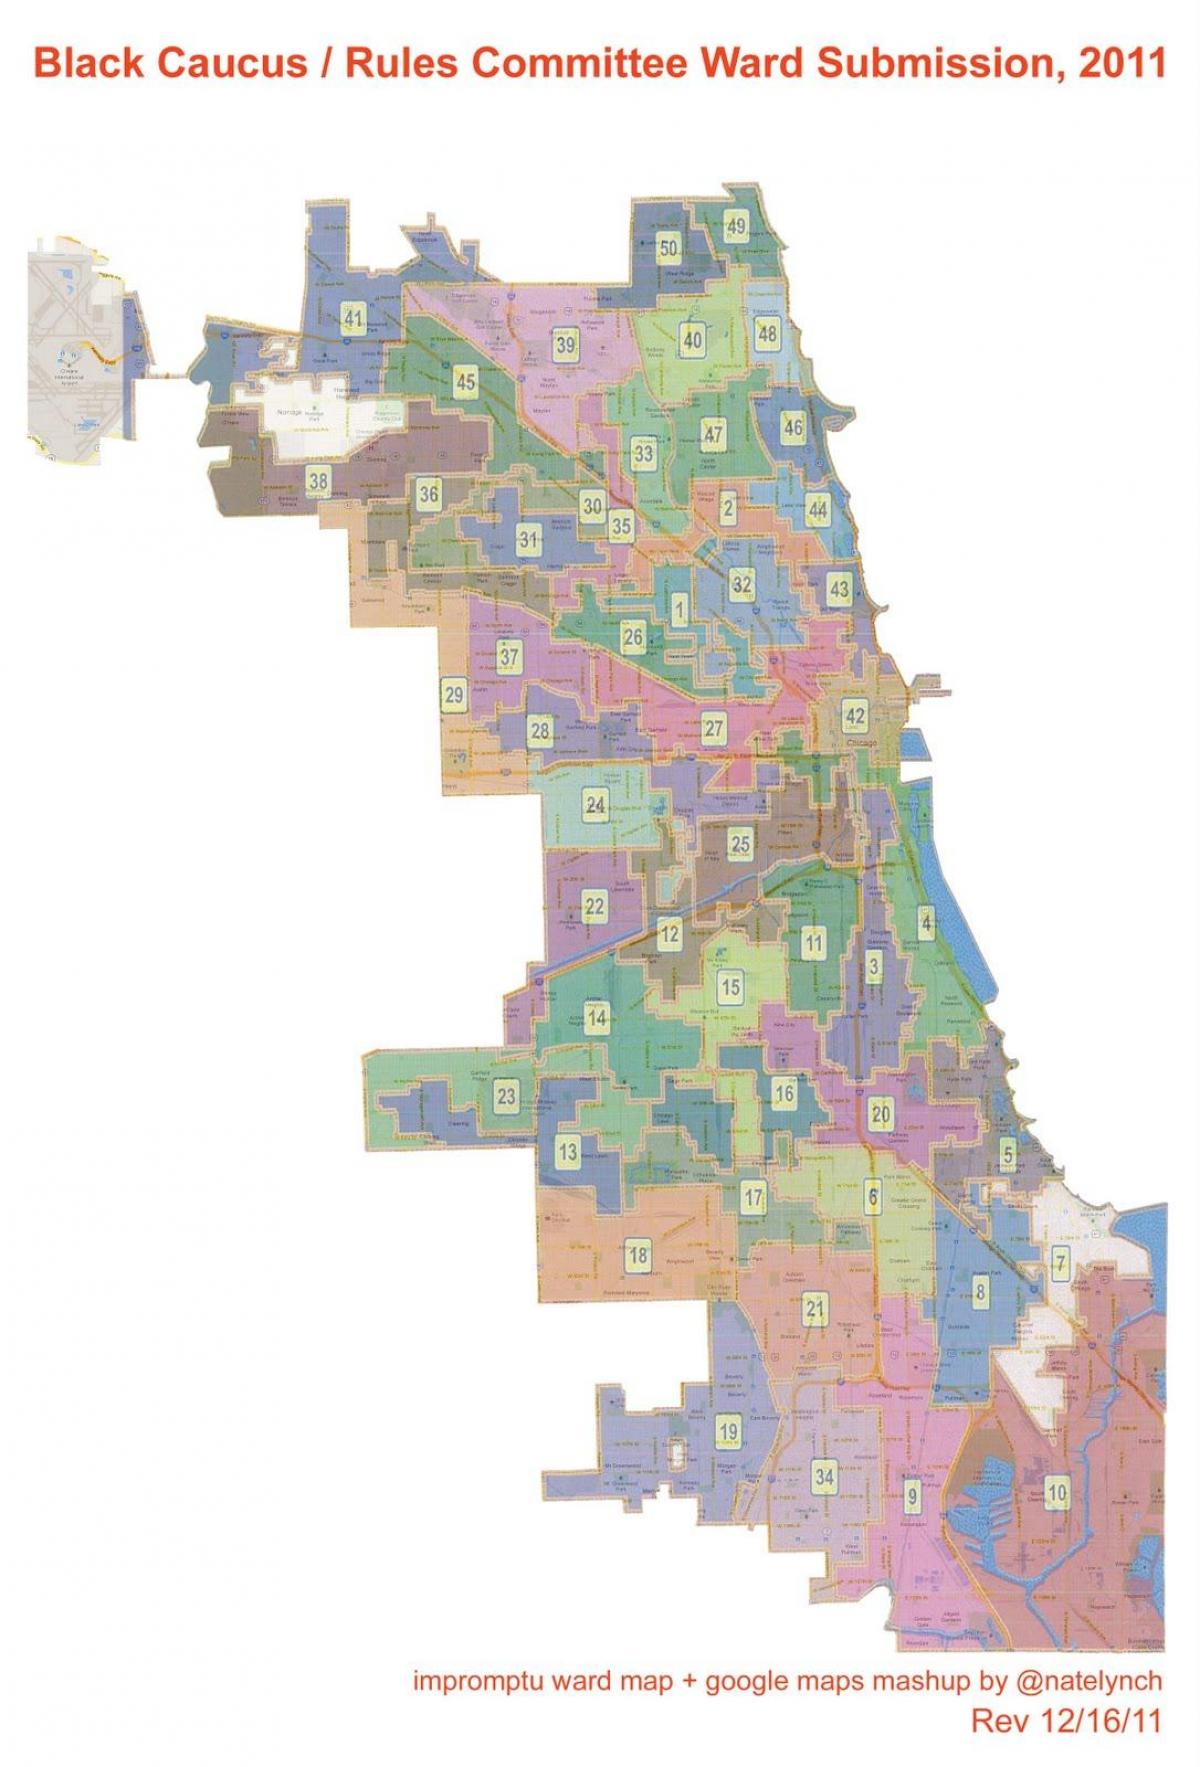 staden Chicago i församlingen karta